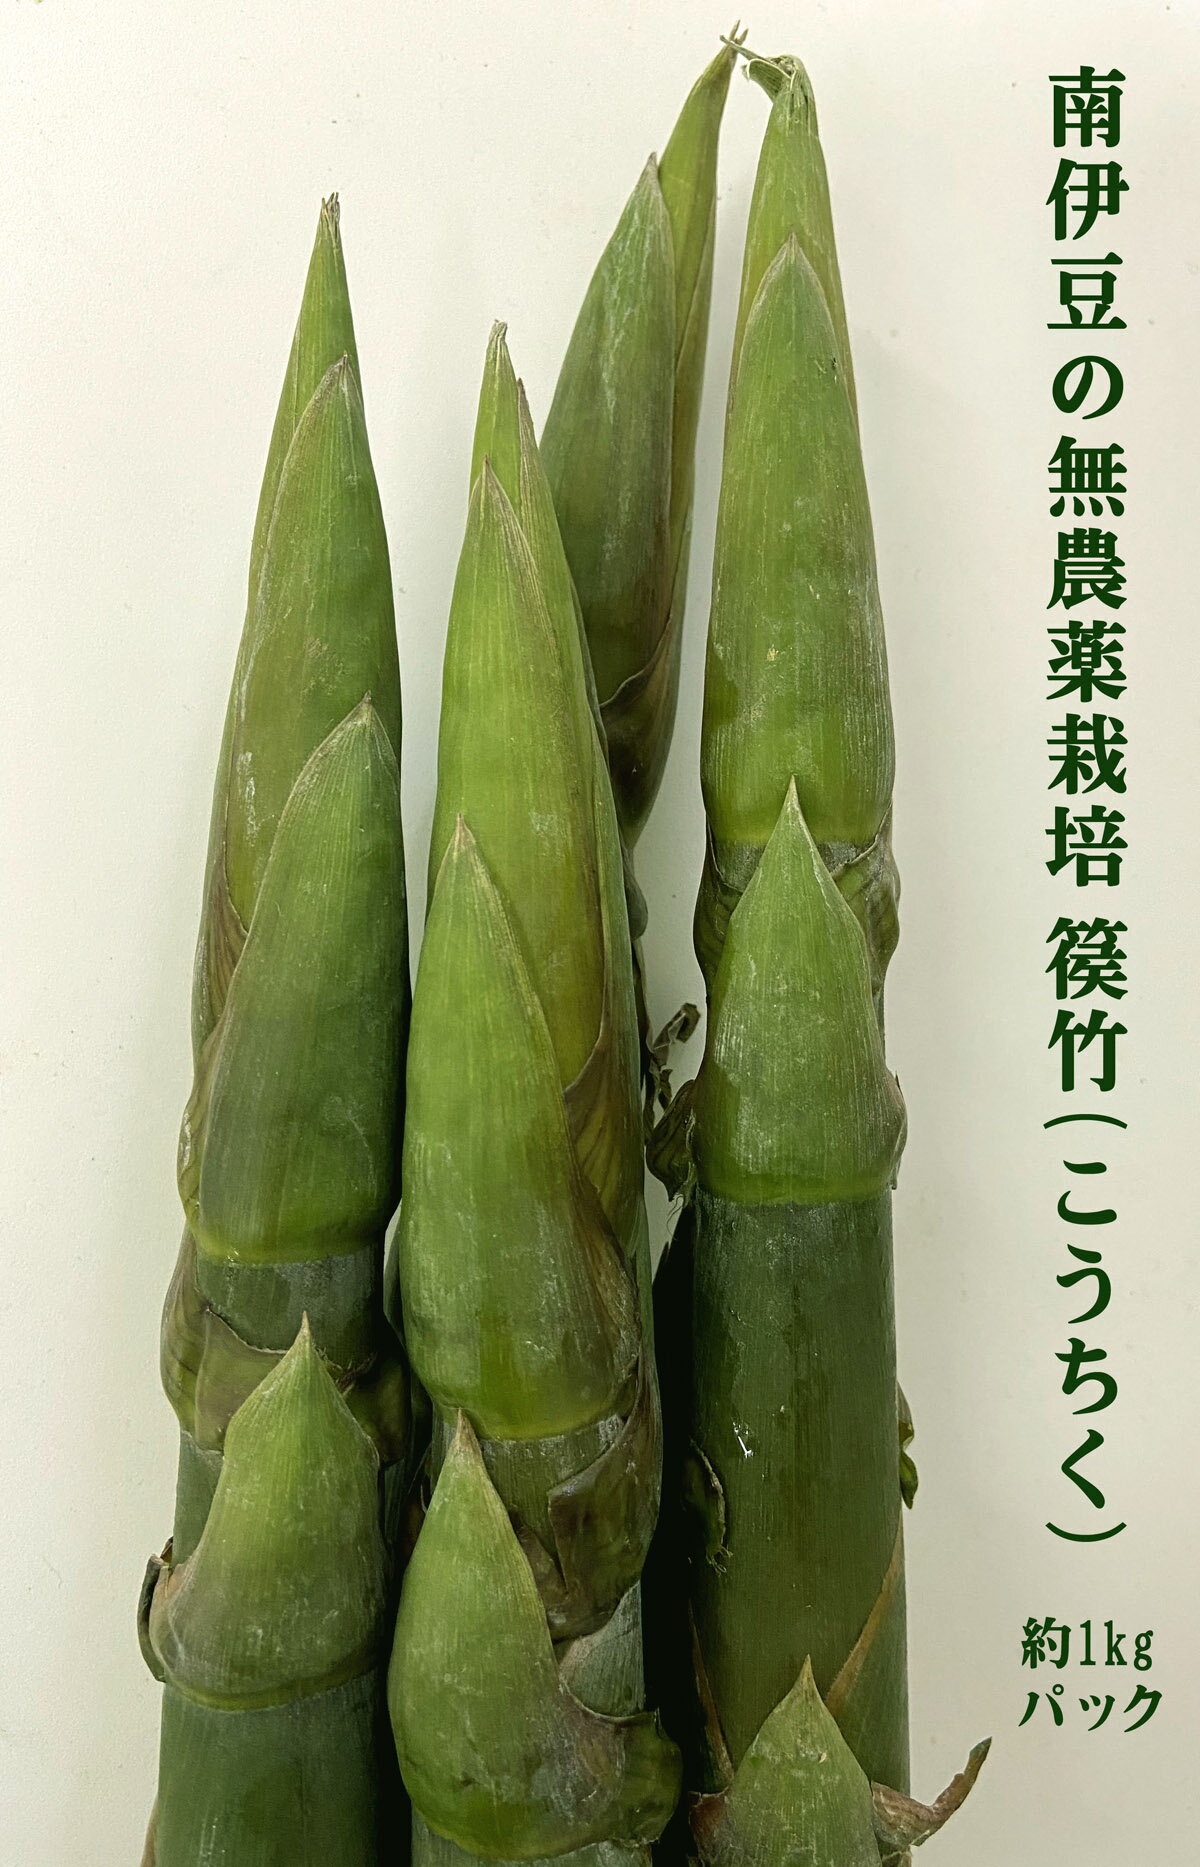 ◎生産者：ガイアシステム　山本　剛（静岡県南伊豆町）農薬0回・化肥0回珍しい春の旬。 篌竹(こうちく）。 篌竹(こうちく）は山本剛さんが九州の竹の研究家から 分けていただいたもので、竹としては静岡県内の富士竹類植物園にも 植生してますがタケノコで収穫しているのはまだ珍しいです。 中国の竹の書籍には味が良い竹として紹介されています。 おすすめの食べ方は、生のまま刻んで汁物や炒め物の具材にしたり 茹でてマヨネーズの様なソースをつけて食べたり 簡単な調理で済ませますが、 水分が少ないので天ぷらが美味しいと思います。 お野菜の発送は月曜日と金曜日のみとなりますのでご了承ください。